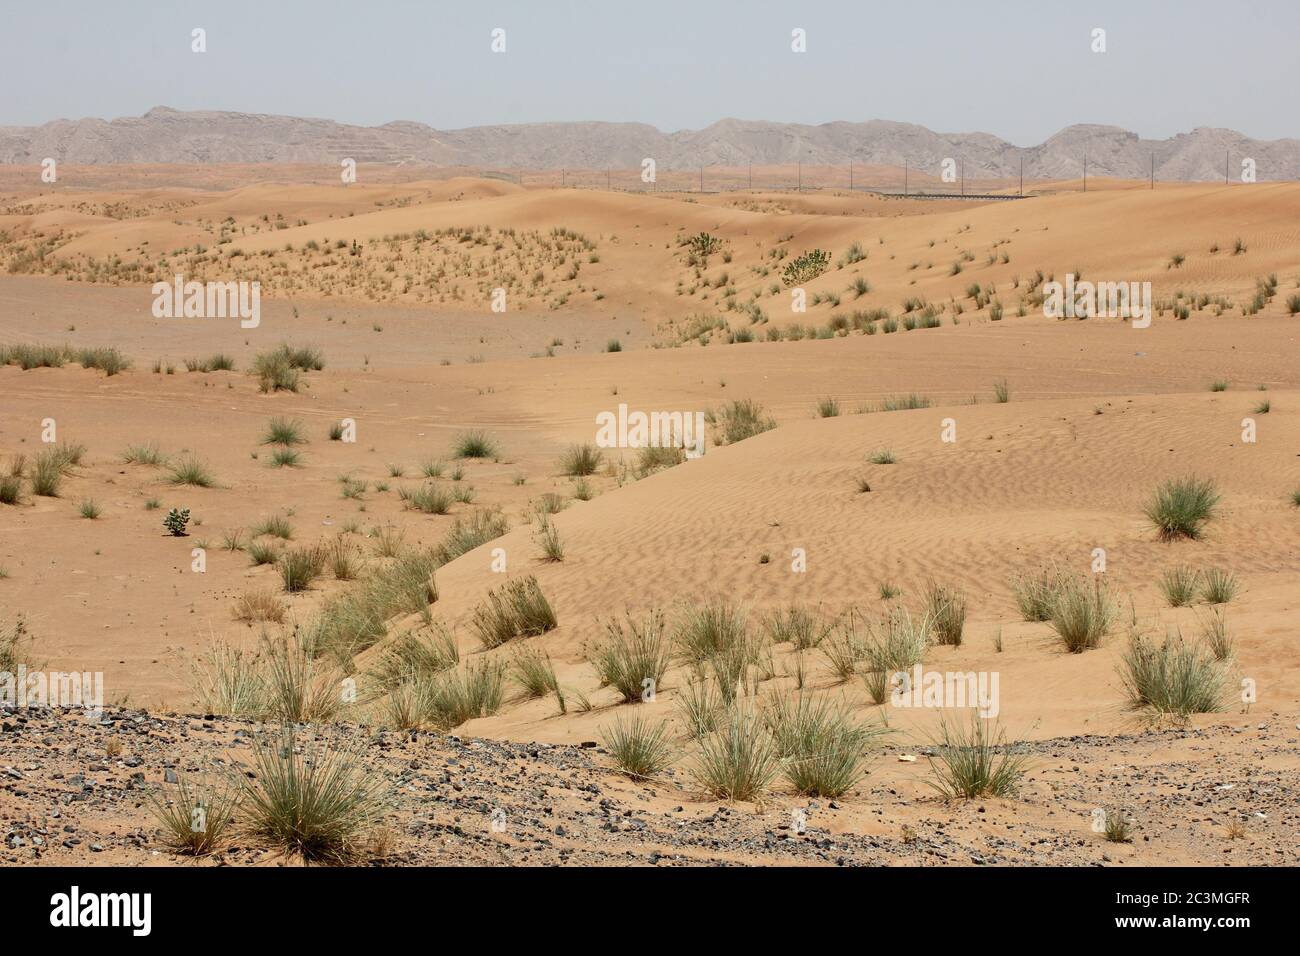 Unberührte Wüste Sanddünen Ökologie / Ökosystem. Wind Aktion ändert ständig  die Größe, Höhe, Form, Textur und Farbe der hohen und trockenen Dünen  Stockfotografie - Alamy